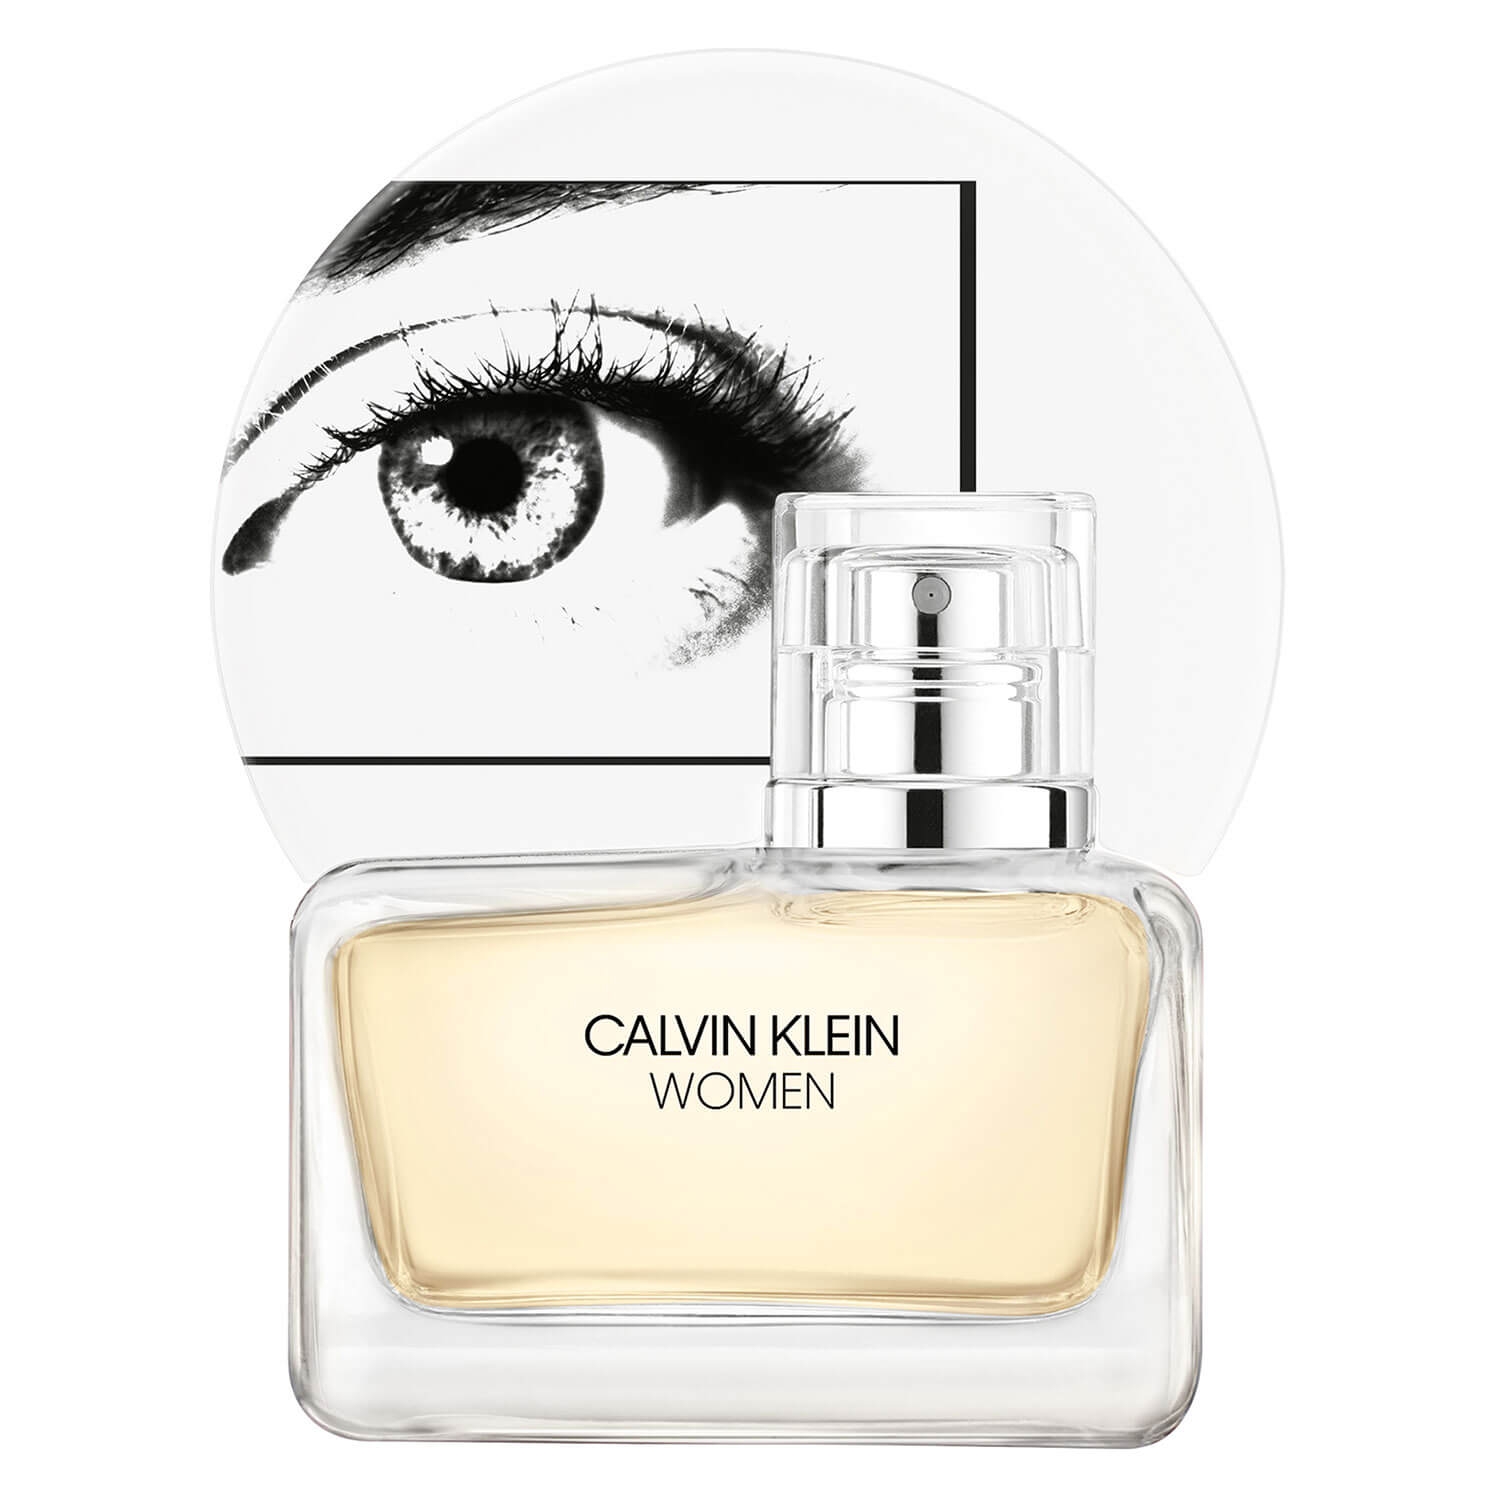 Product image from Calvin Klein Women - Eau de Toilette